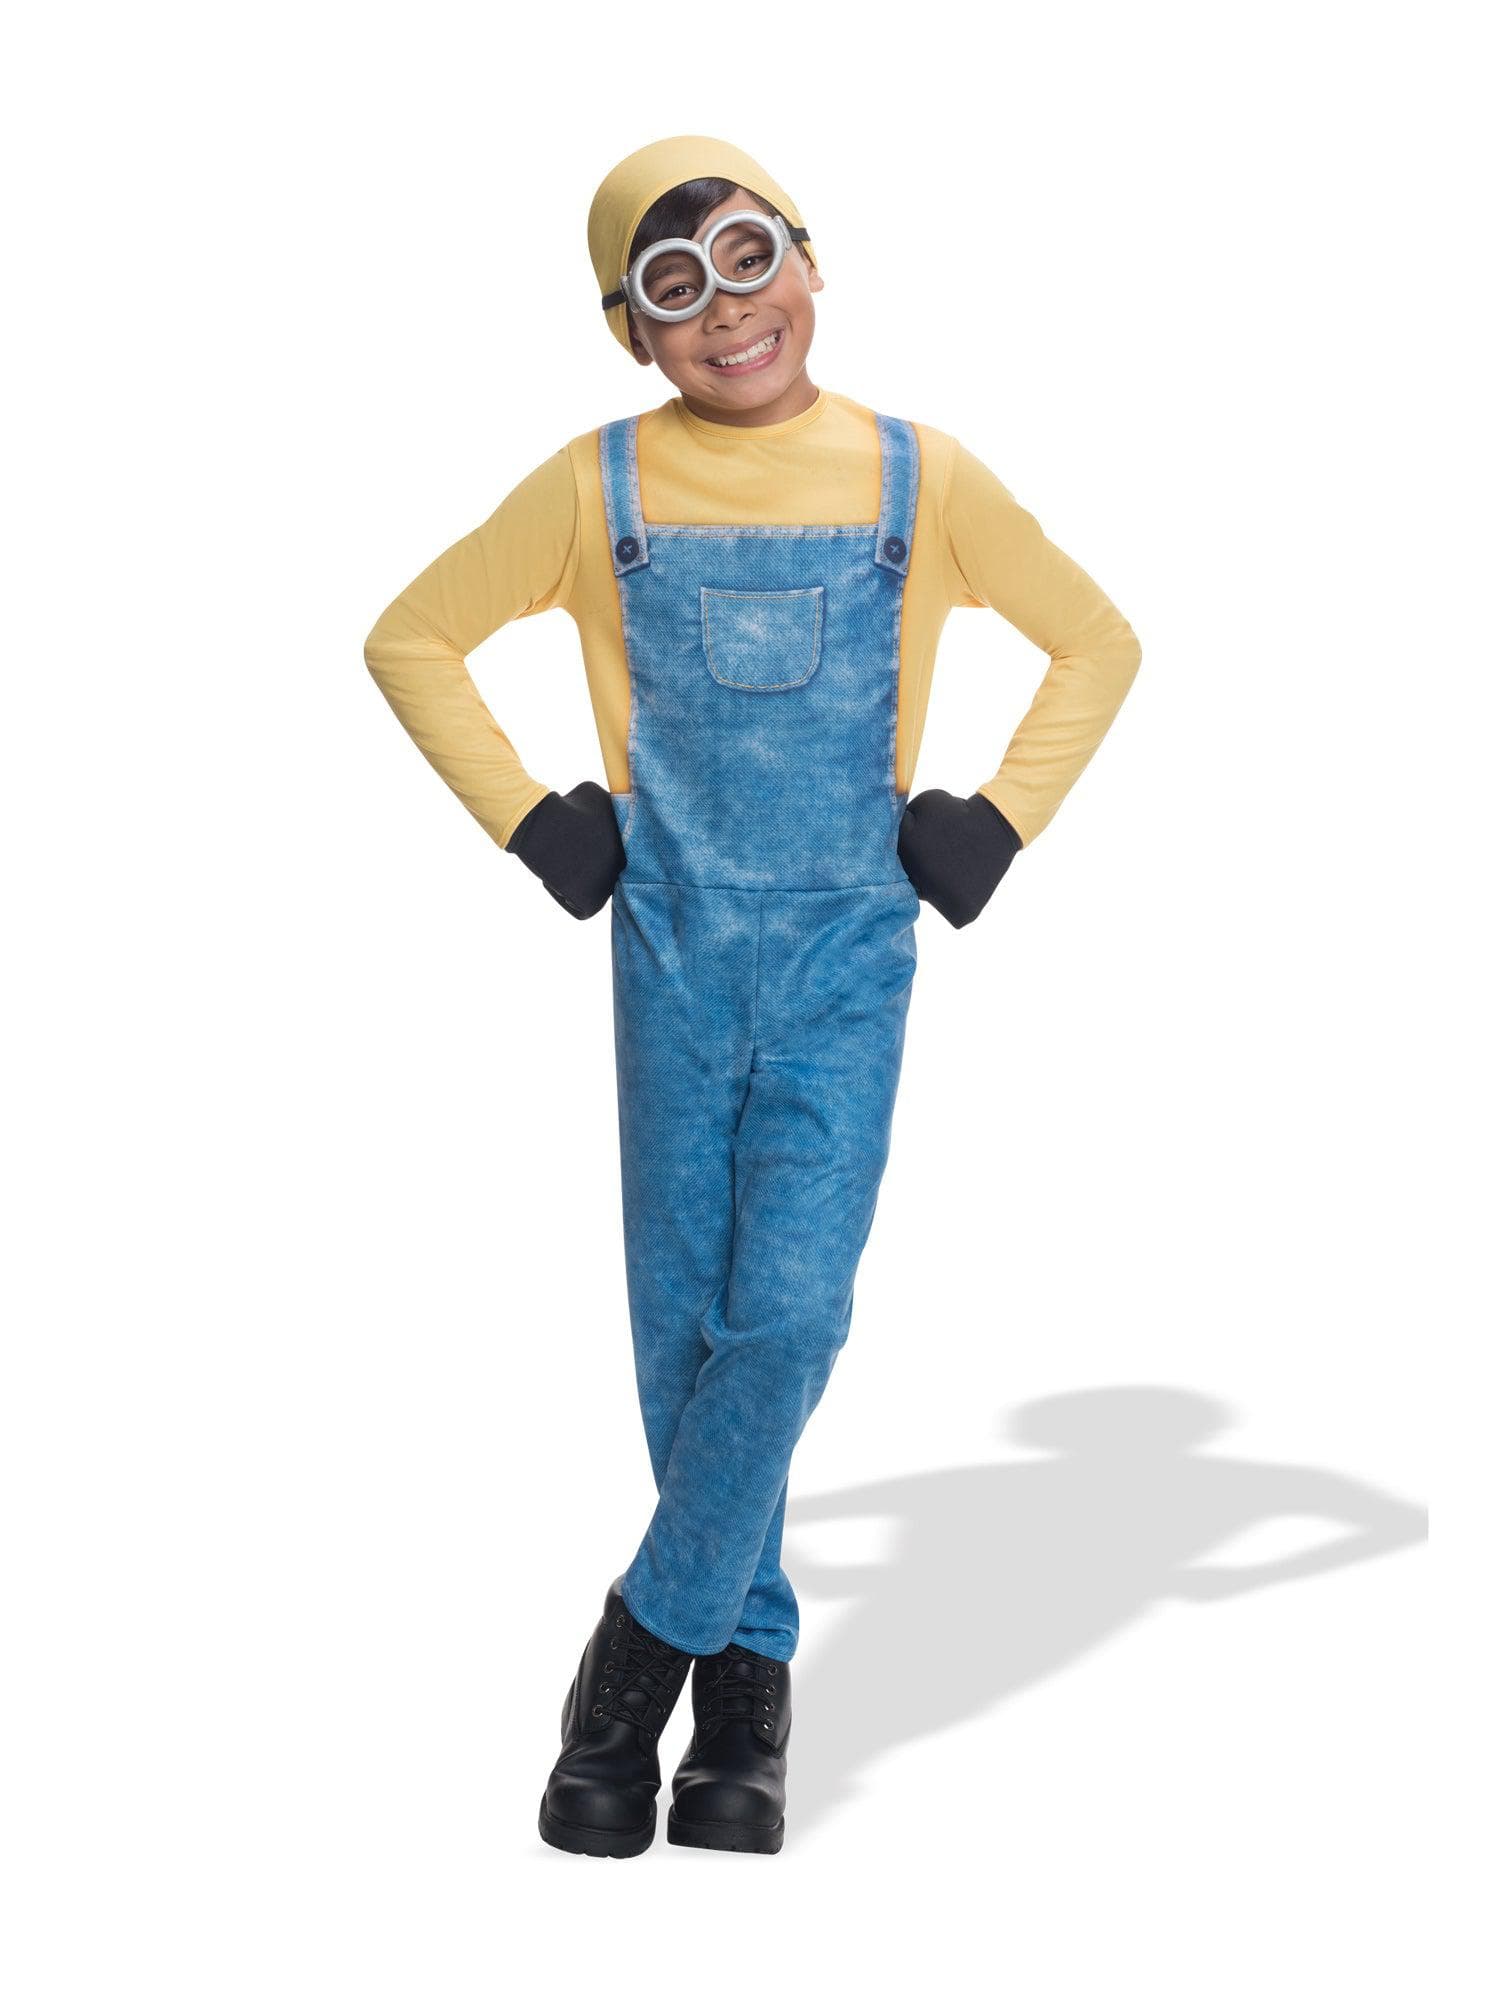 Kids' Despicable Me Minion Bob Costume - costumes.com